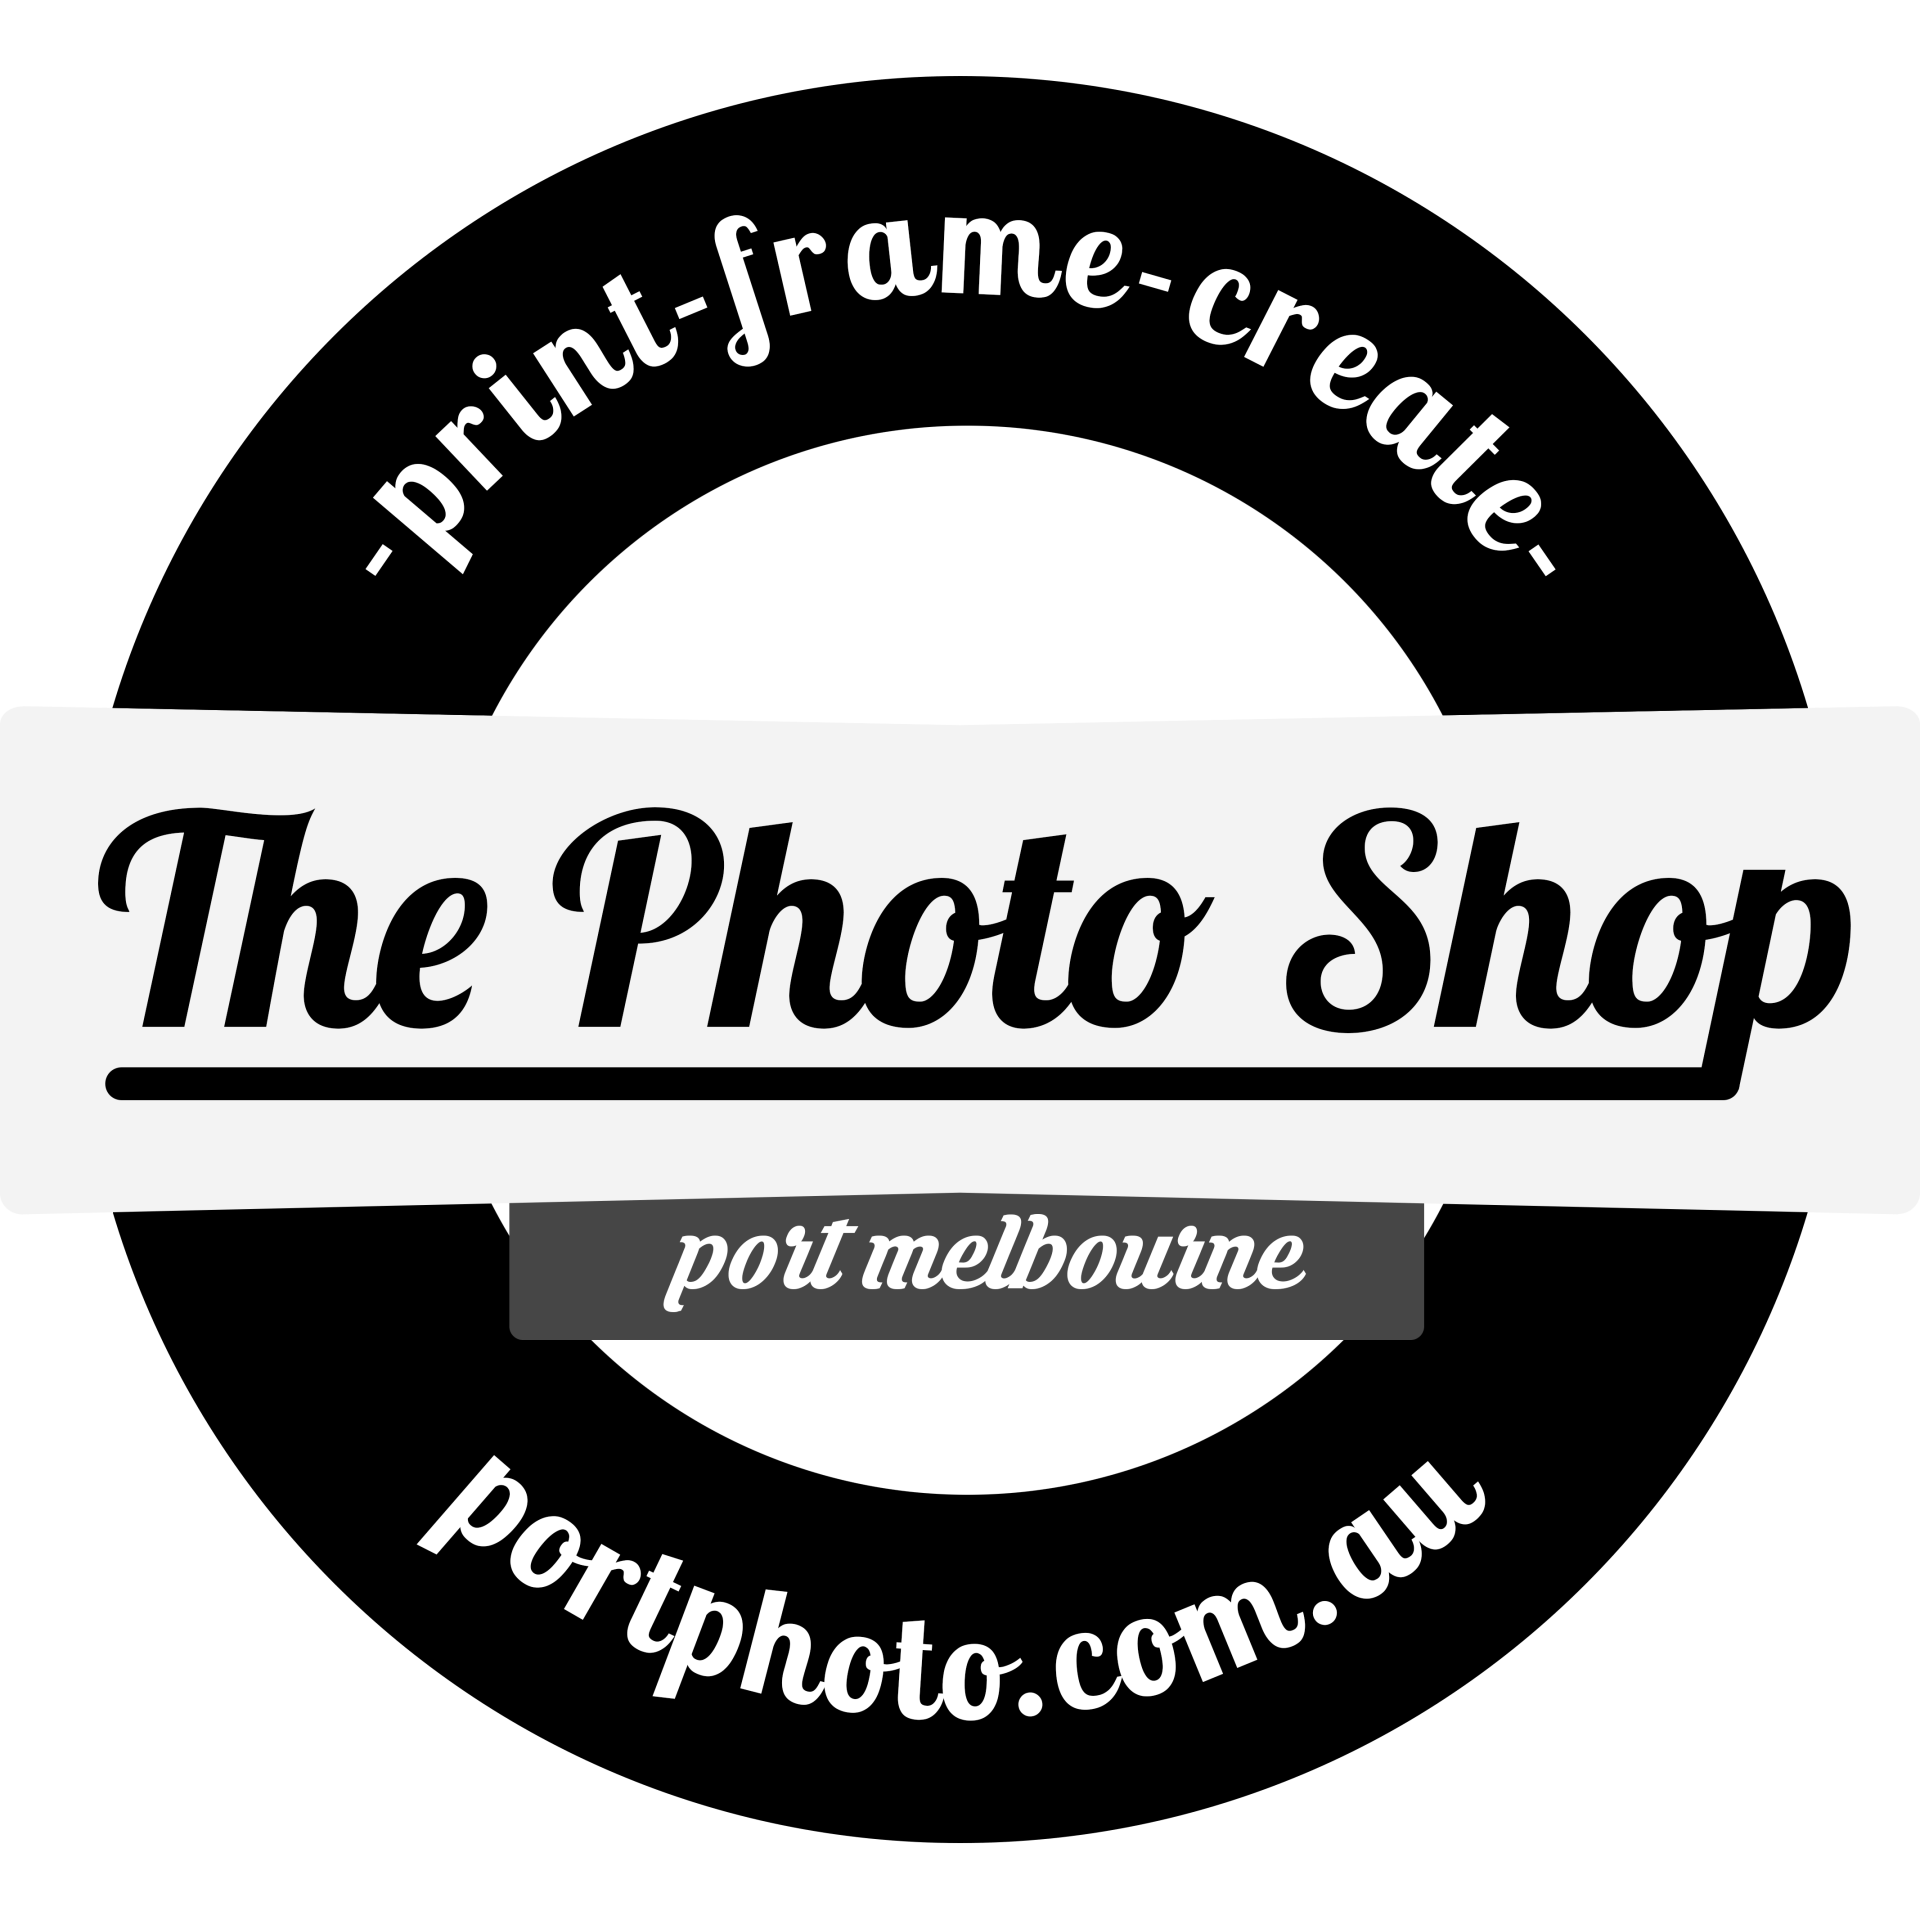 The Photo Shop Logo